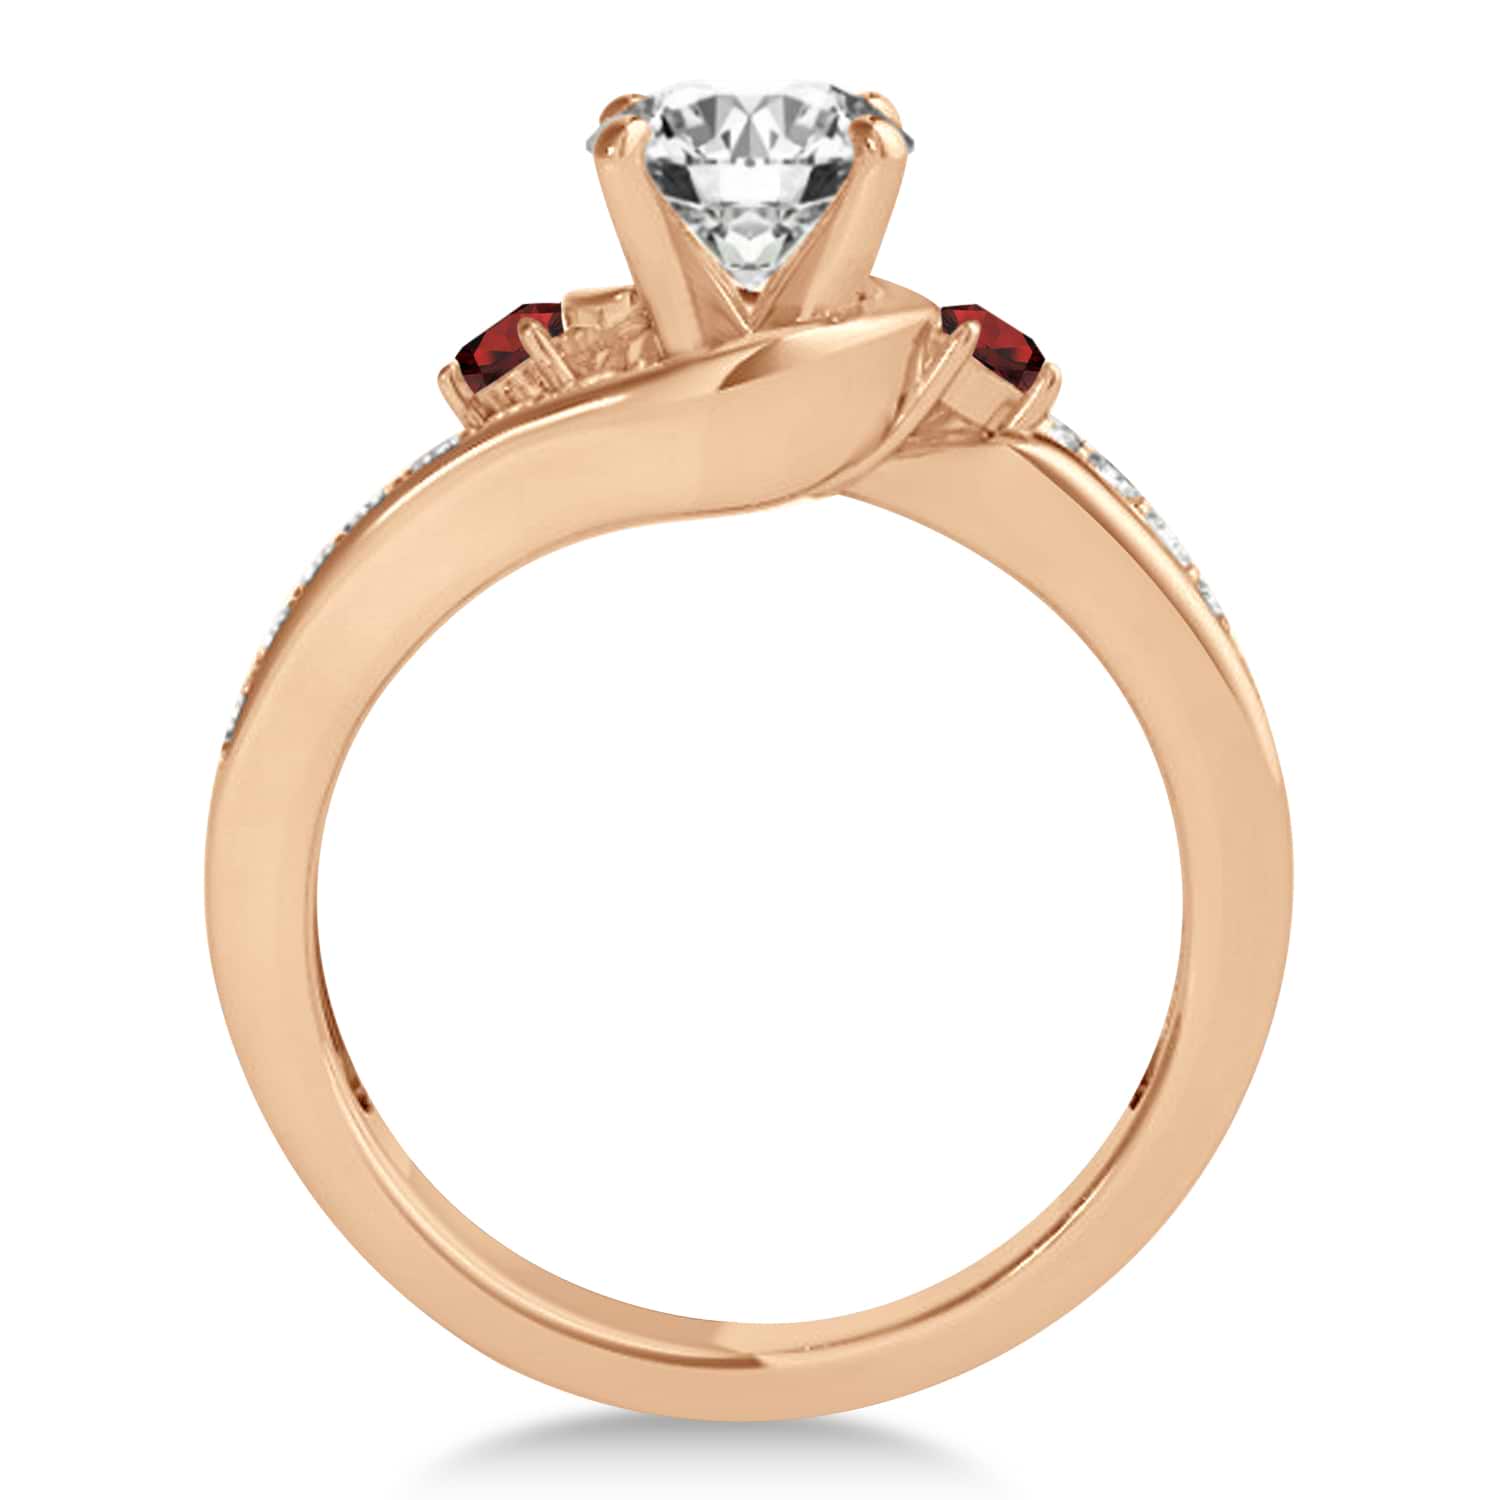 Swirl Design Garnet & Diamond Engagement Ring Setting 18k Rose Gold 0.38ct